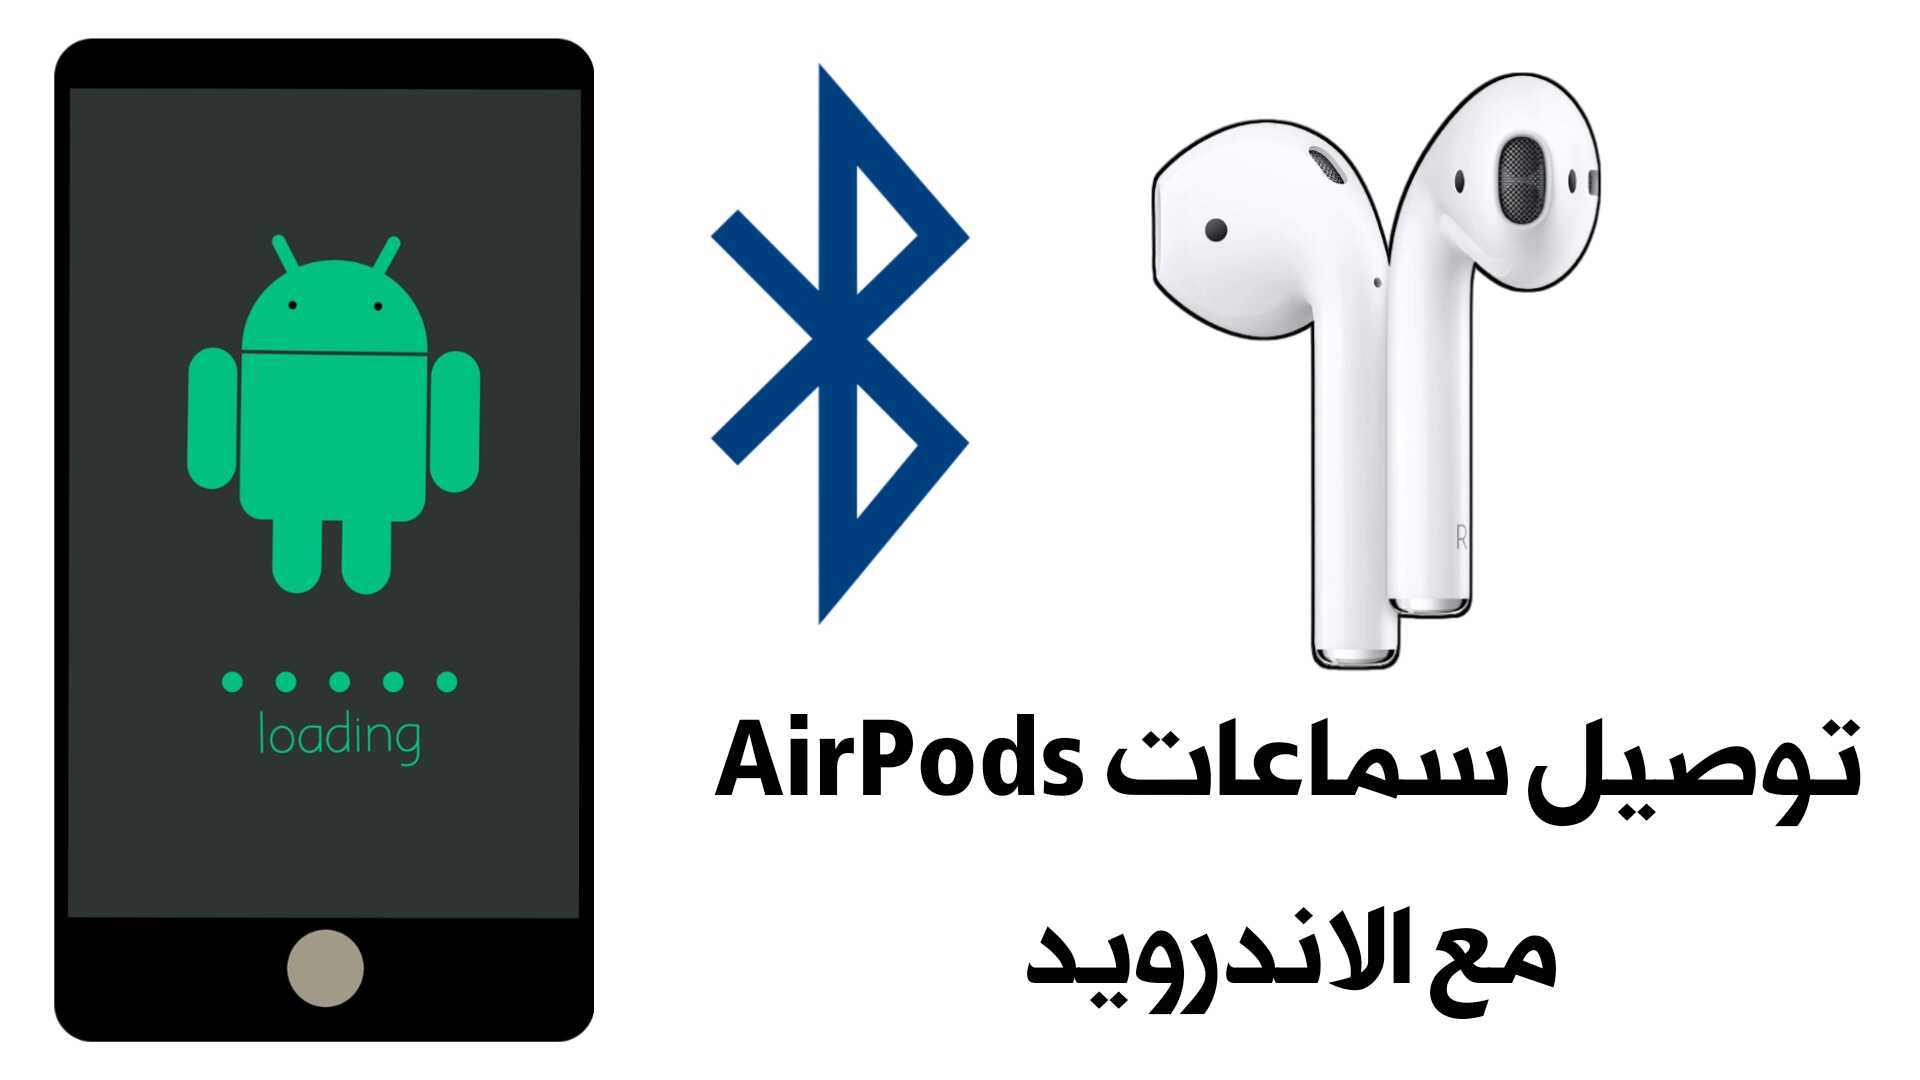 توصيل سماعات AirPods  مع الاندرويد مع عرض نسبة شحن البطارية ومميزات كثيرة